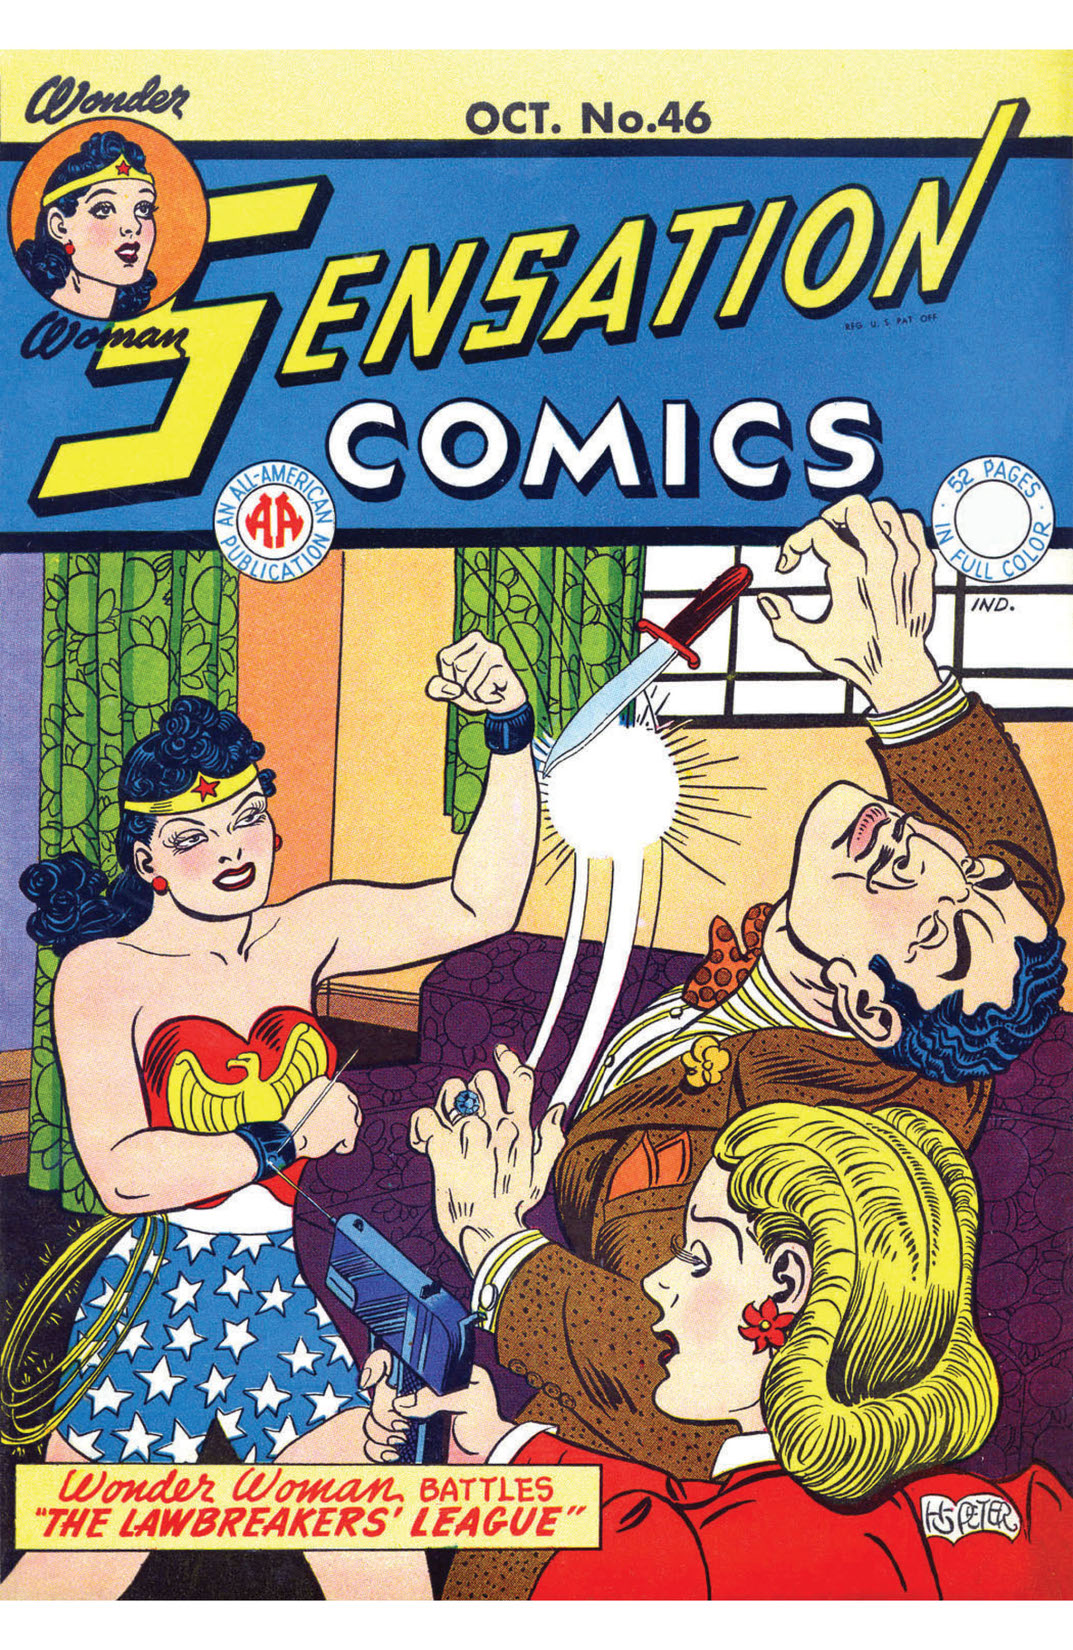 Sensation Comics #46 preview images